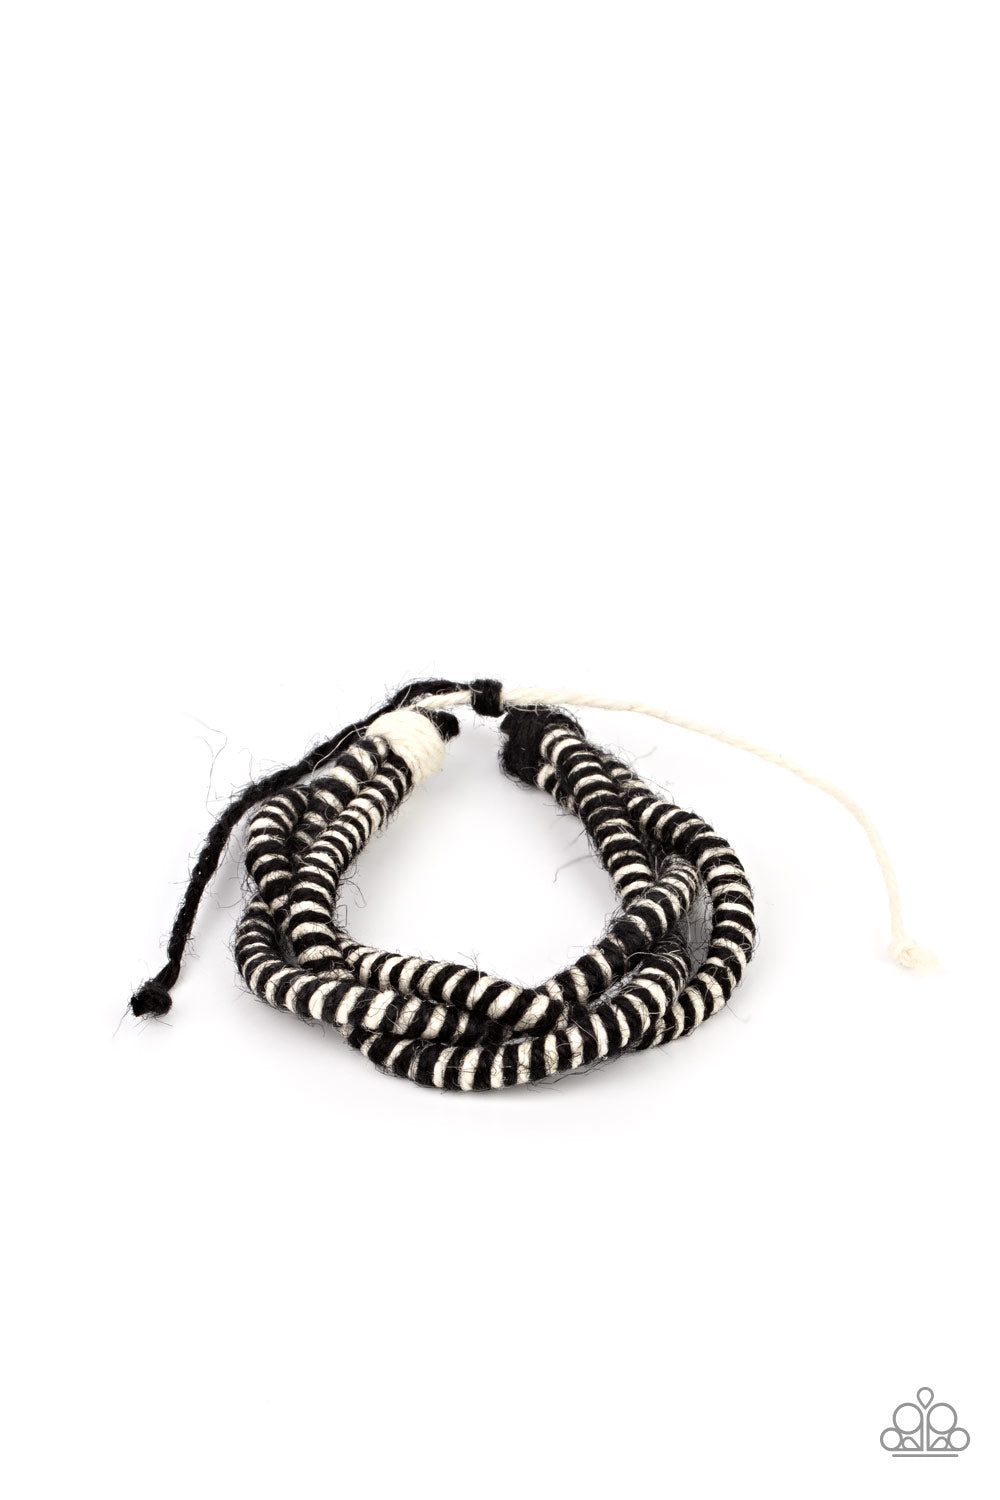 Paparazzi Accessories Island Endeavor - Black Bracelets - Lady T Accessories